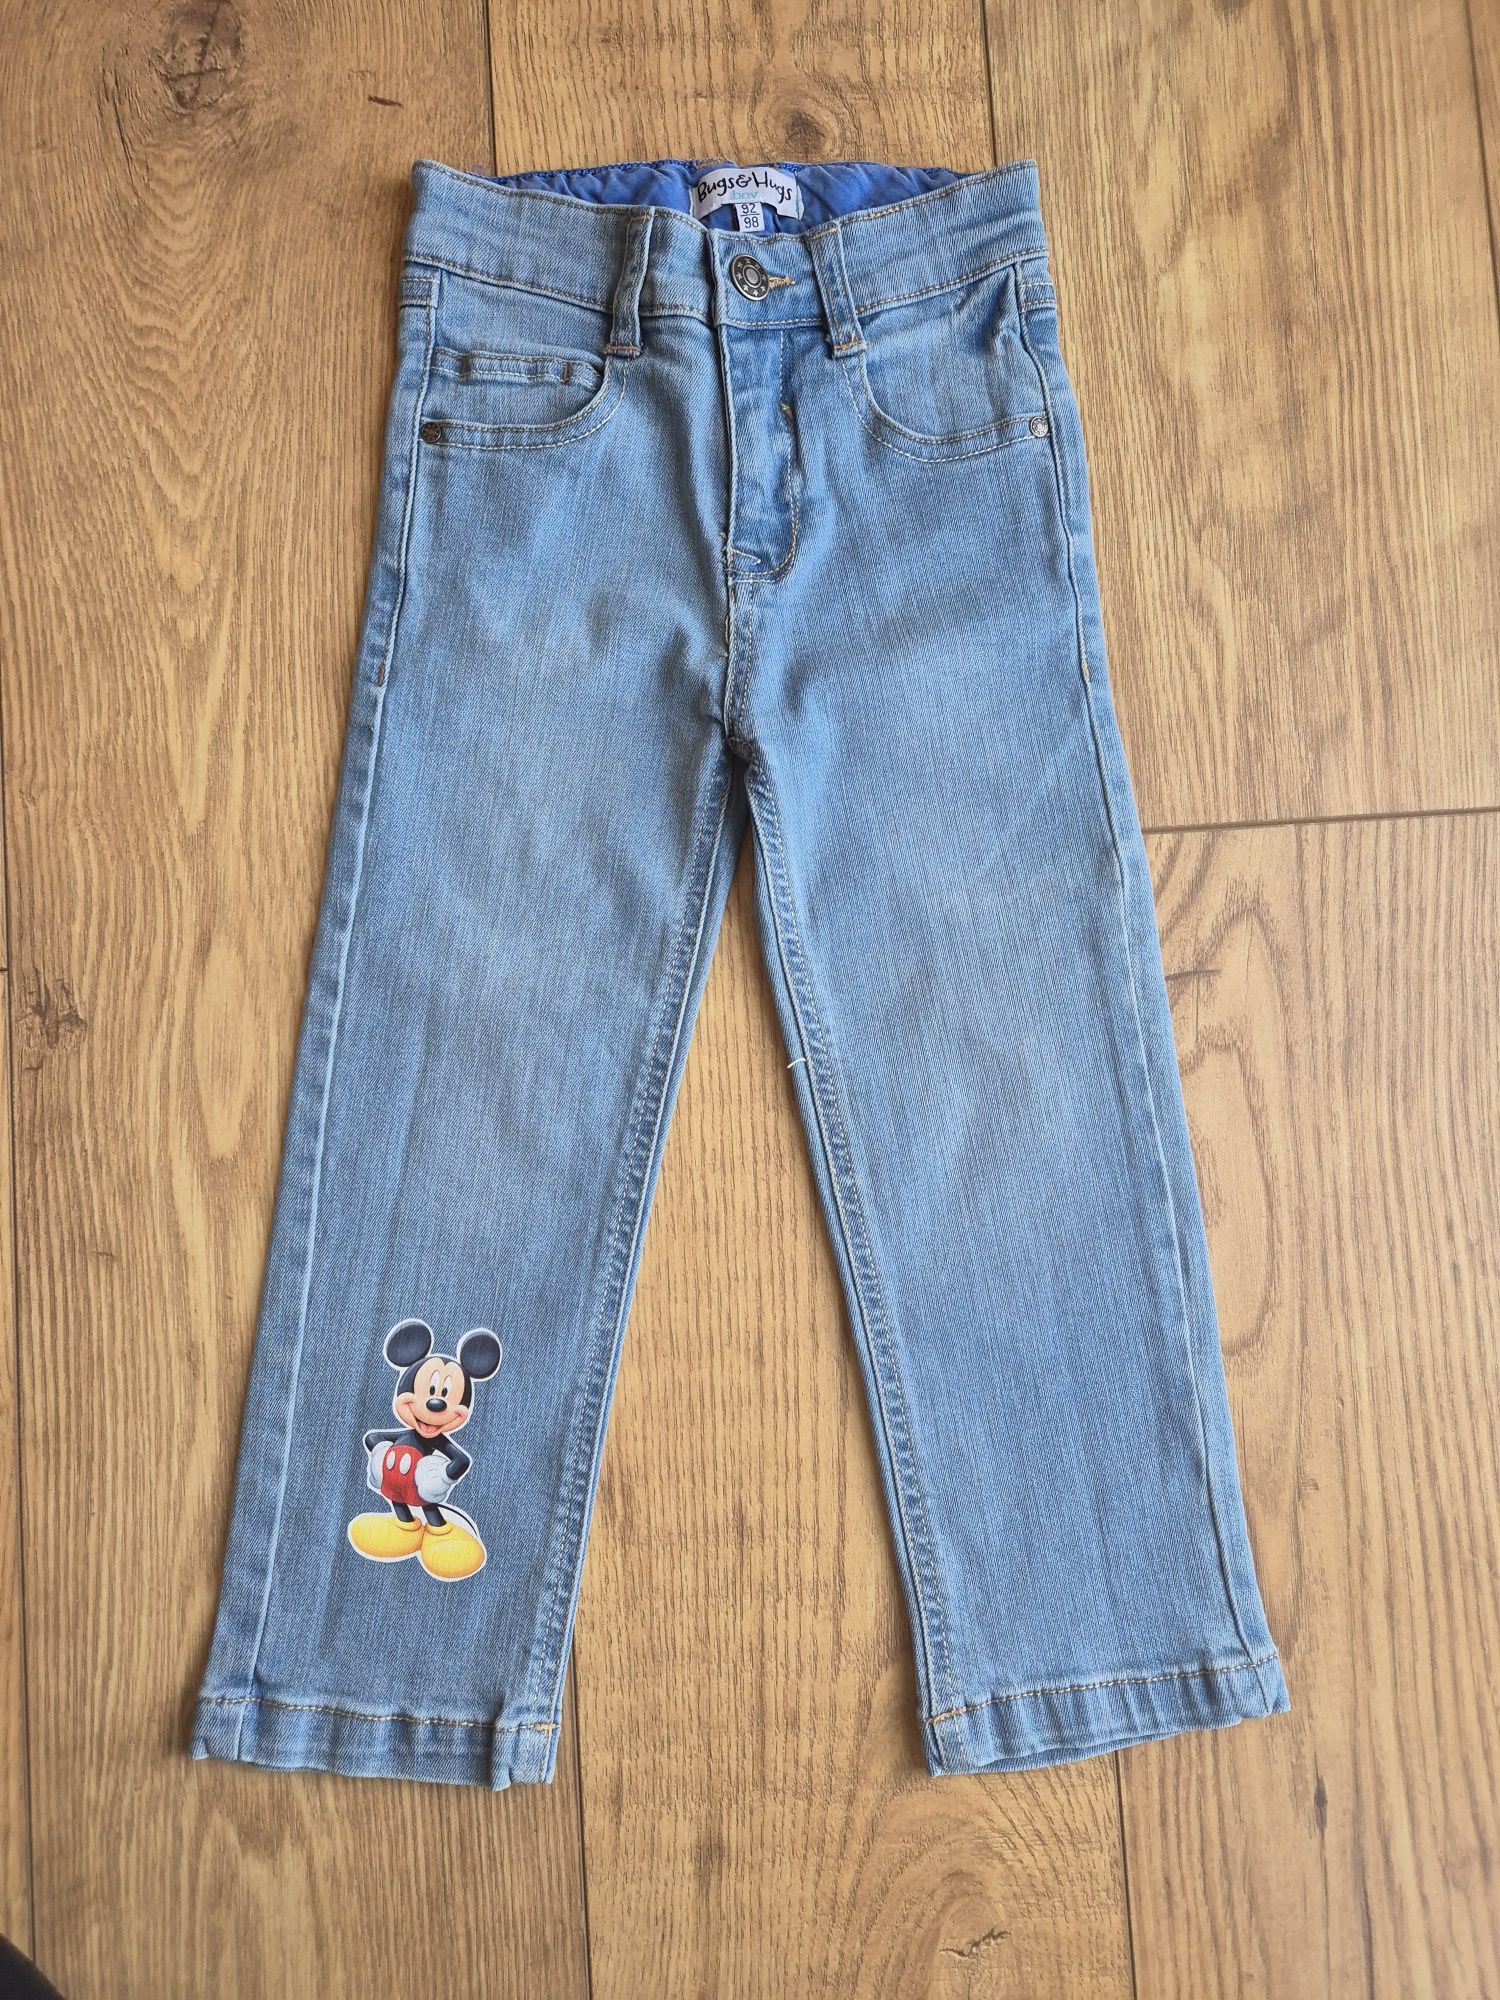 Spodnie jeansy Myszka Mickey r. 98